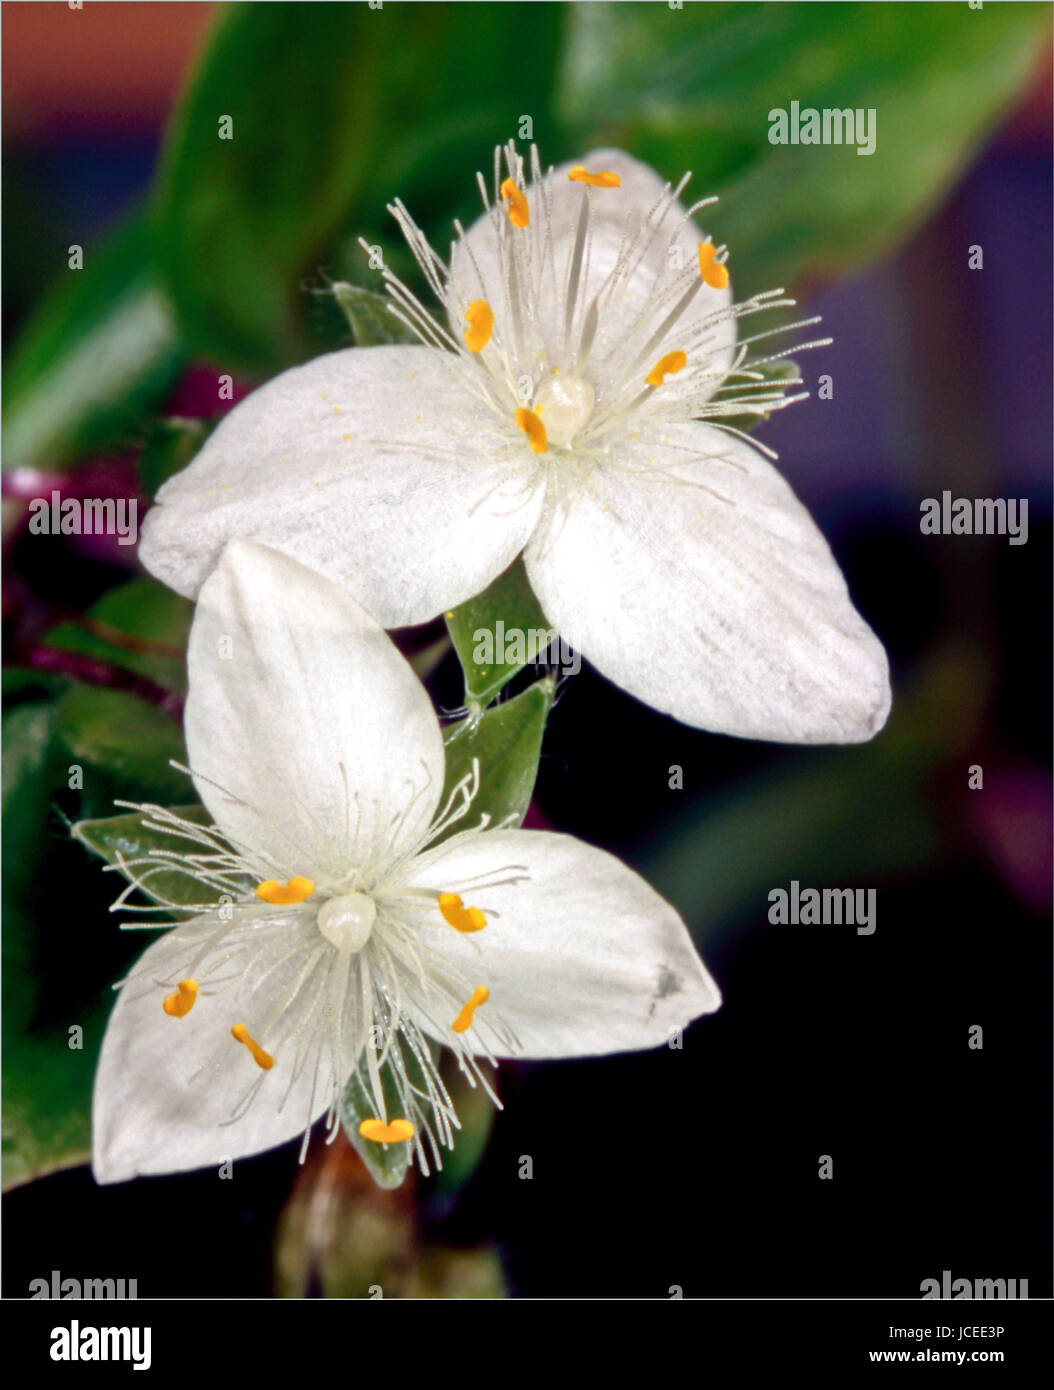 Tradescantia flower Stock Photo